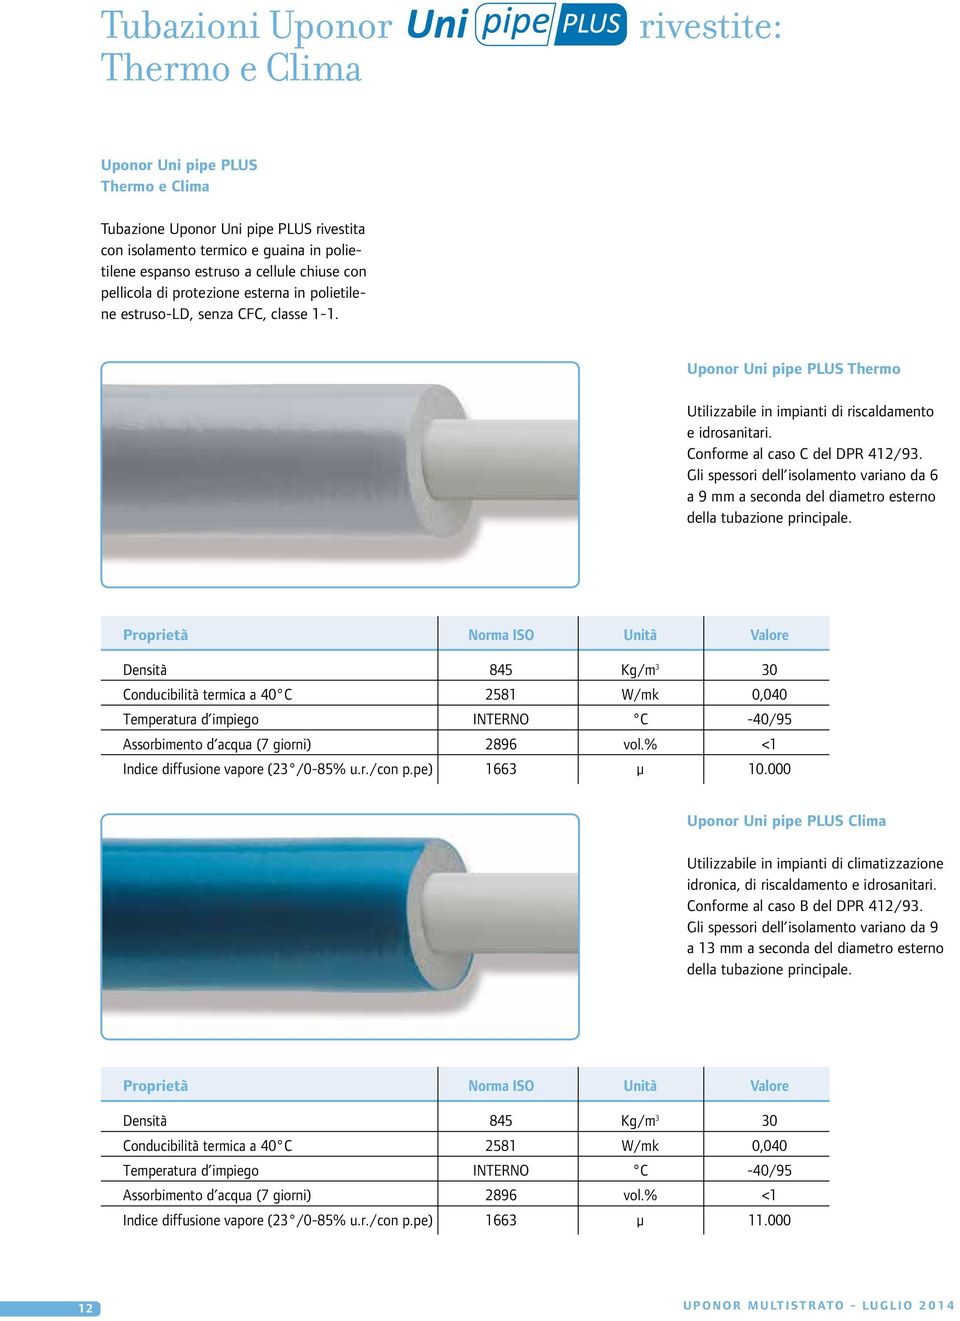 Conforme al caso C del DPR 412/93. Gli spessori dell isolamento variano da 6 a 9 mm a seconda del diametro esterno della tubazione principale.